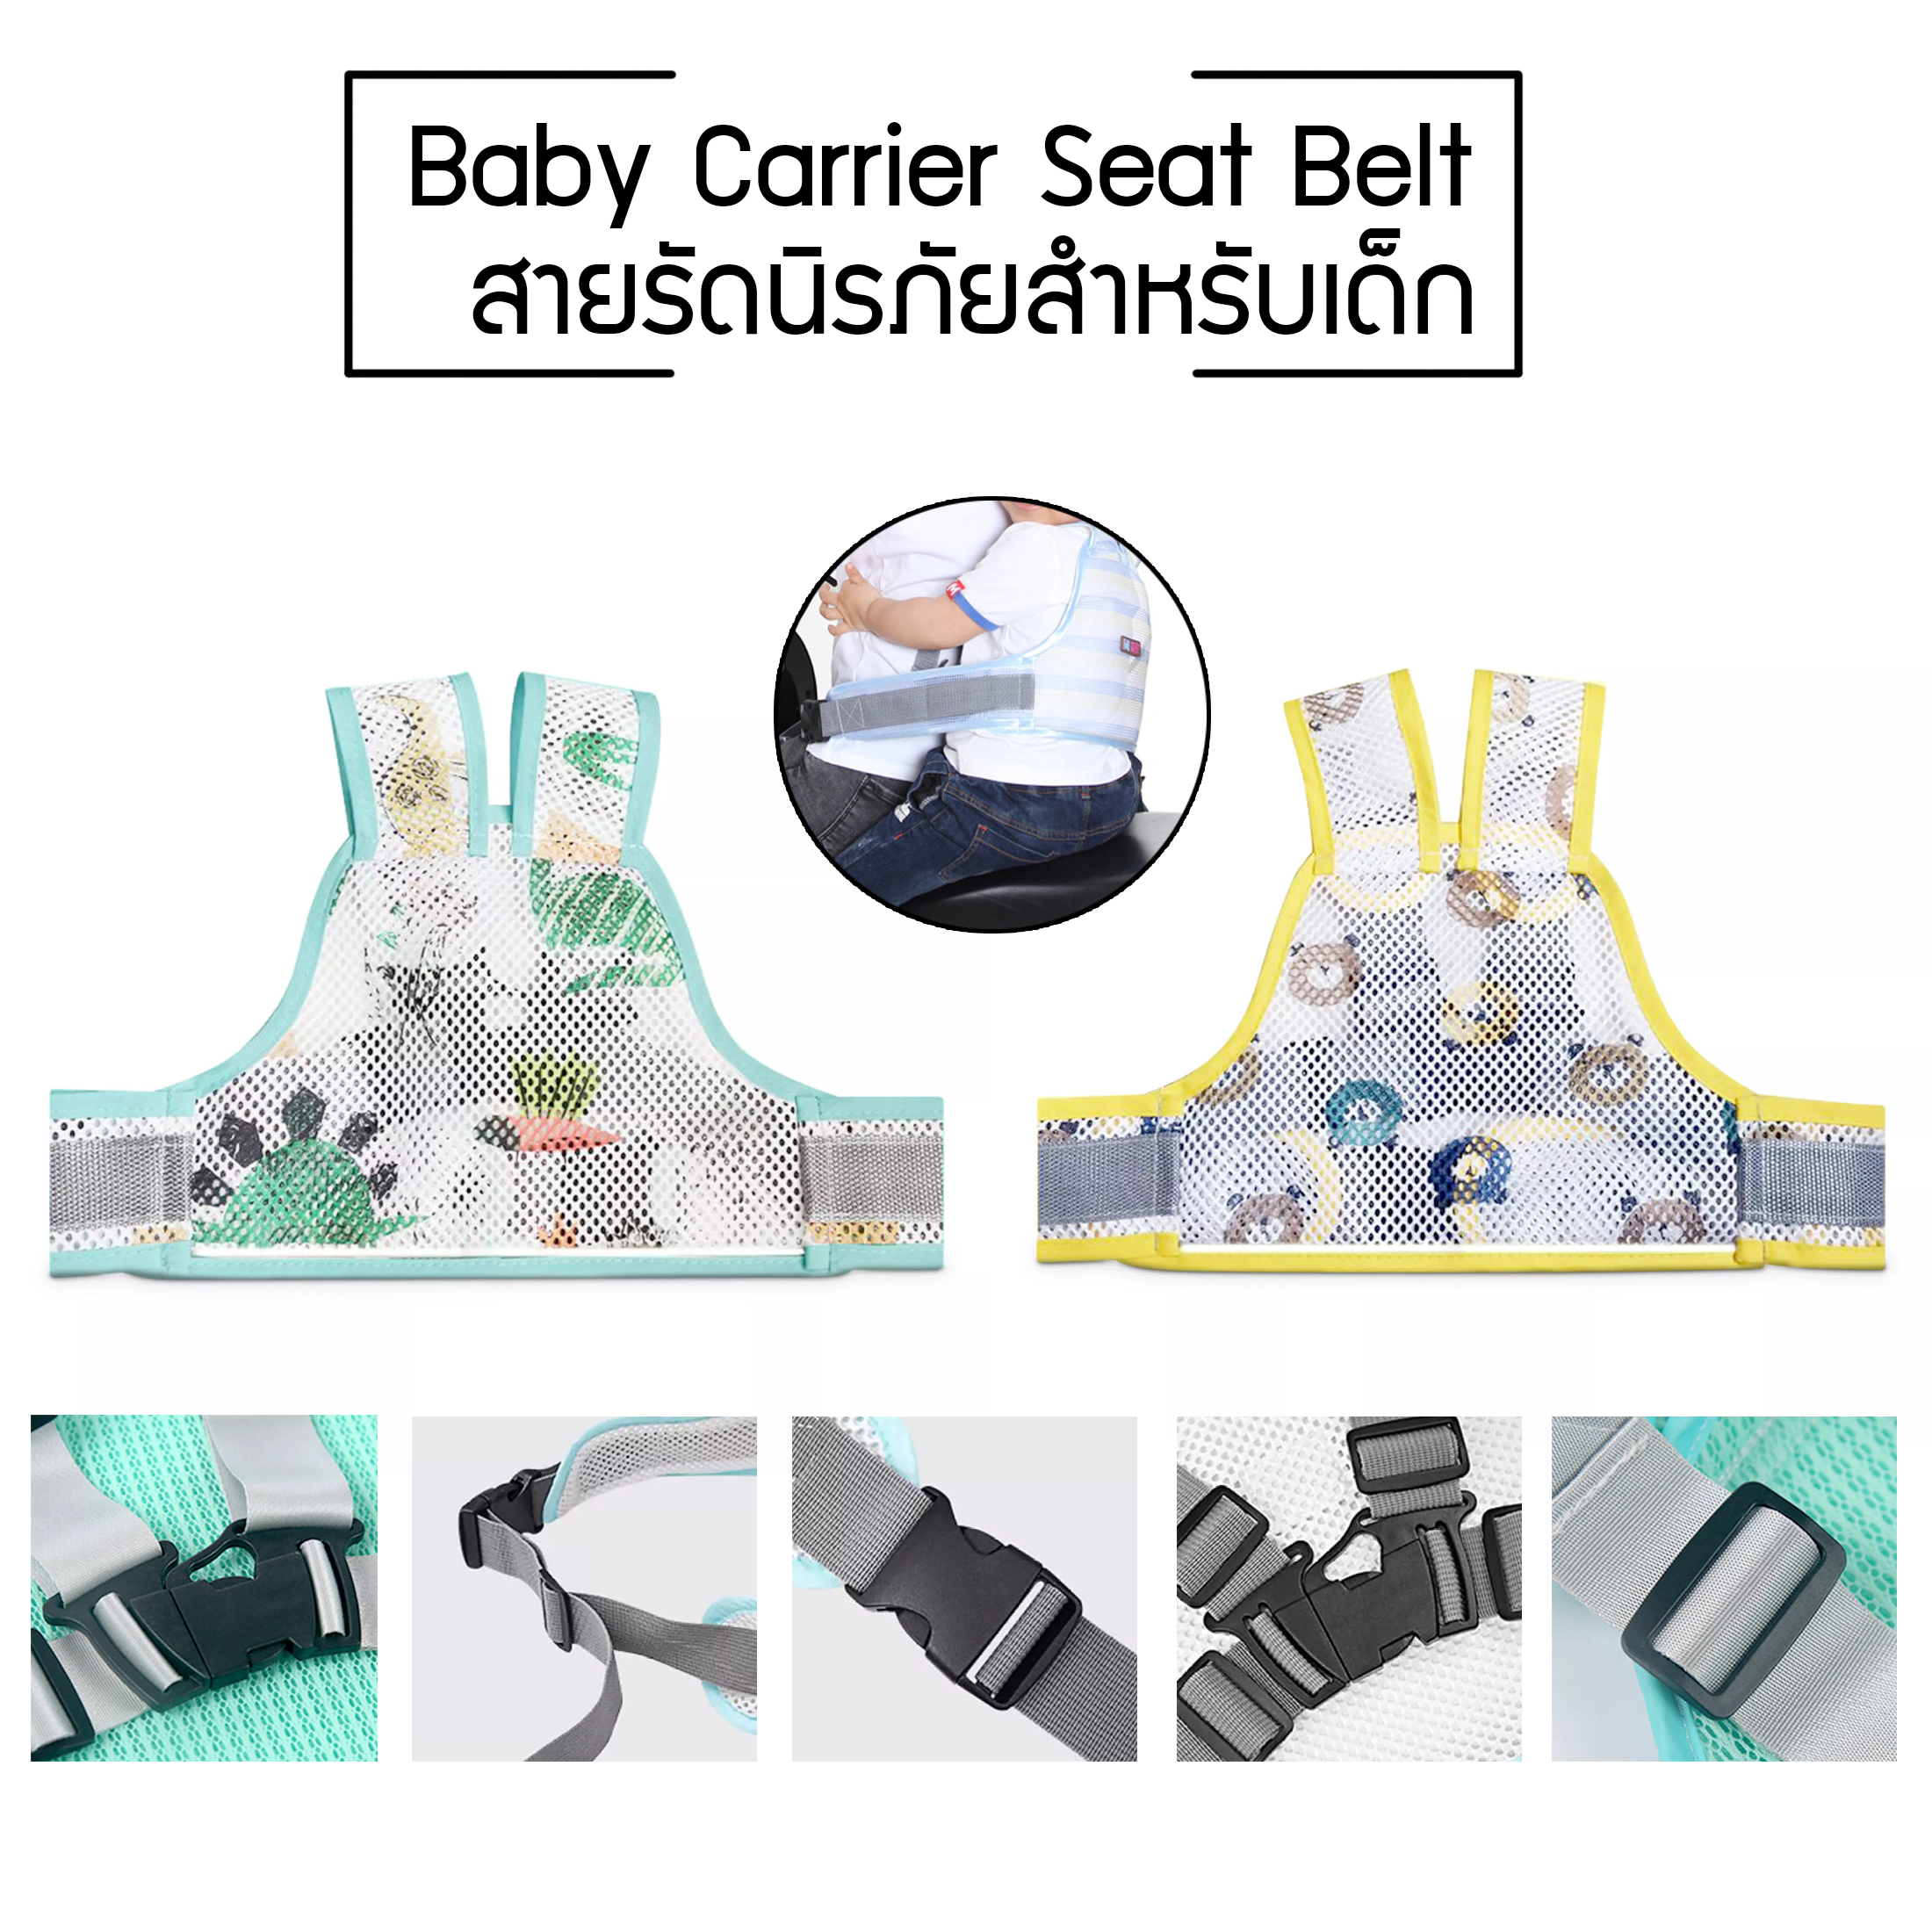 สายรัดนิรภัยเด็ก สำหรับเด็ก เข็มขัดนิรภัยเด็ก สายรัดเอวกันเด็กตก ป้องกันเด็กตกรถ เพื่อความปลอดภัย Baby Carrier Seat Belt ร้านJoys4u